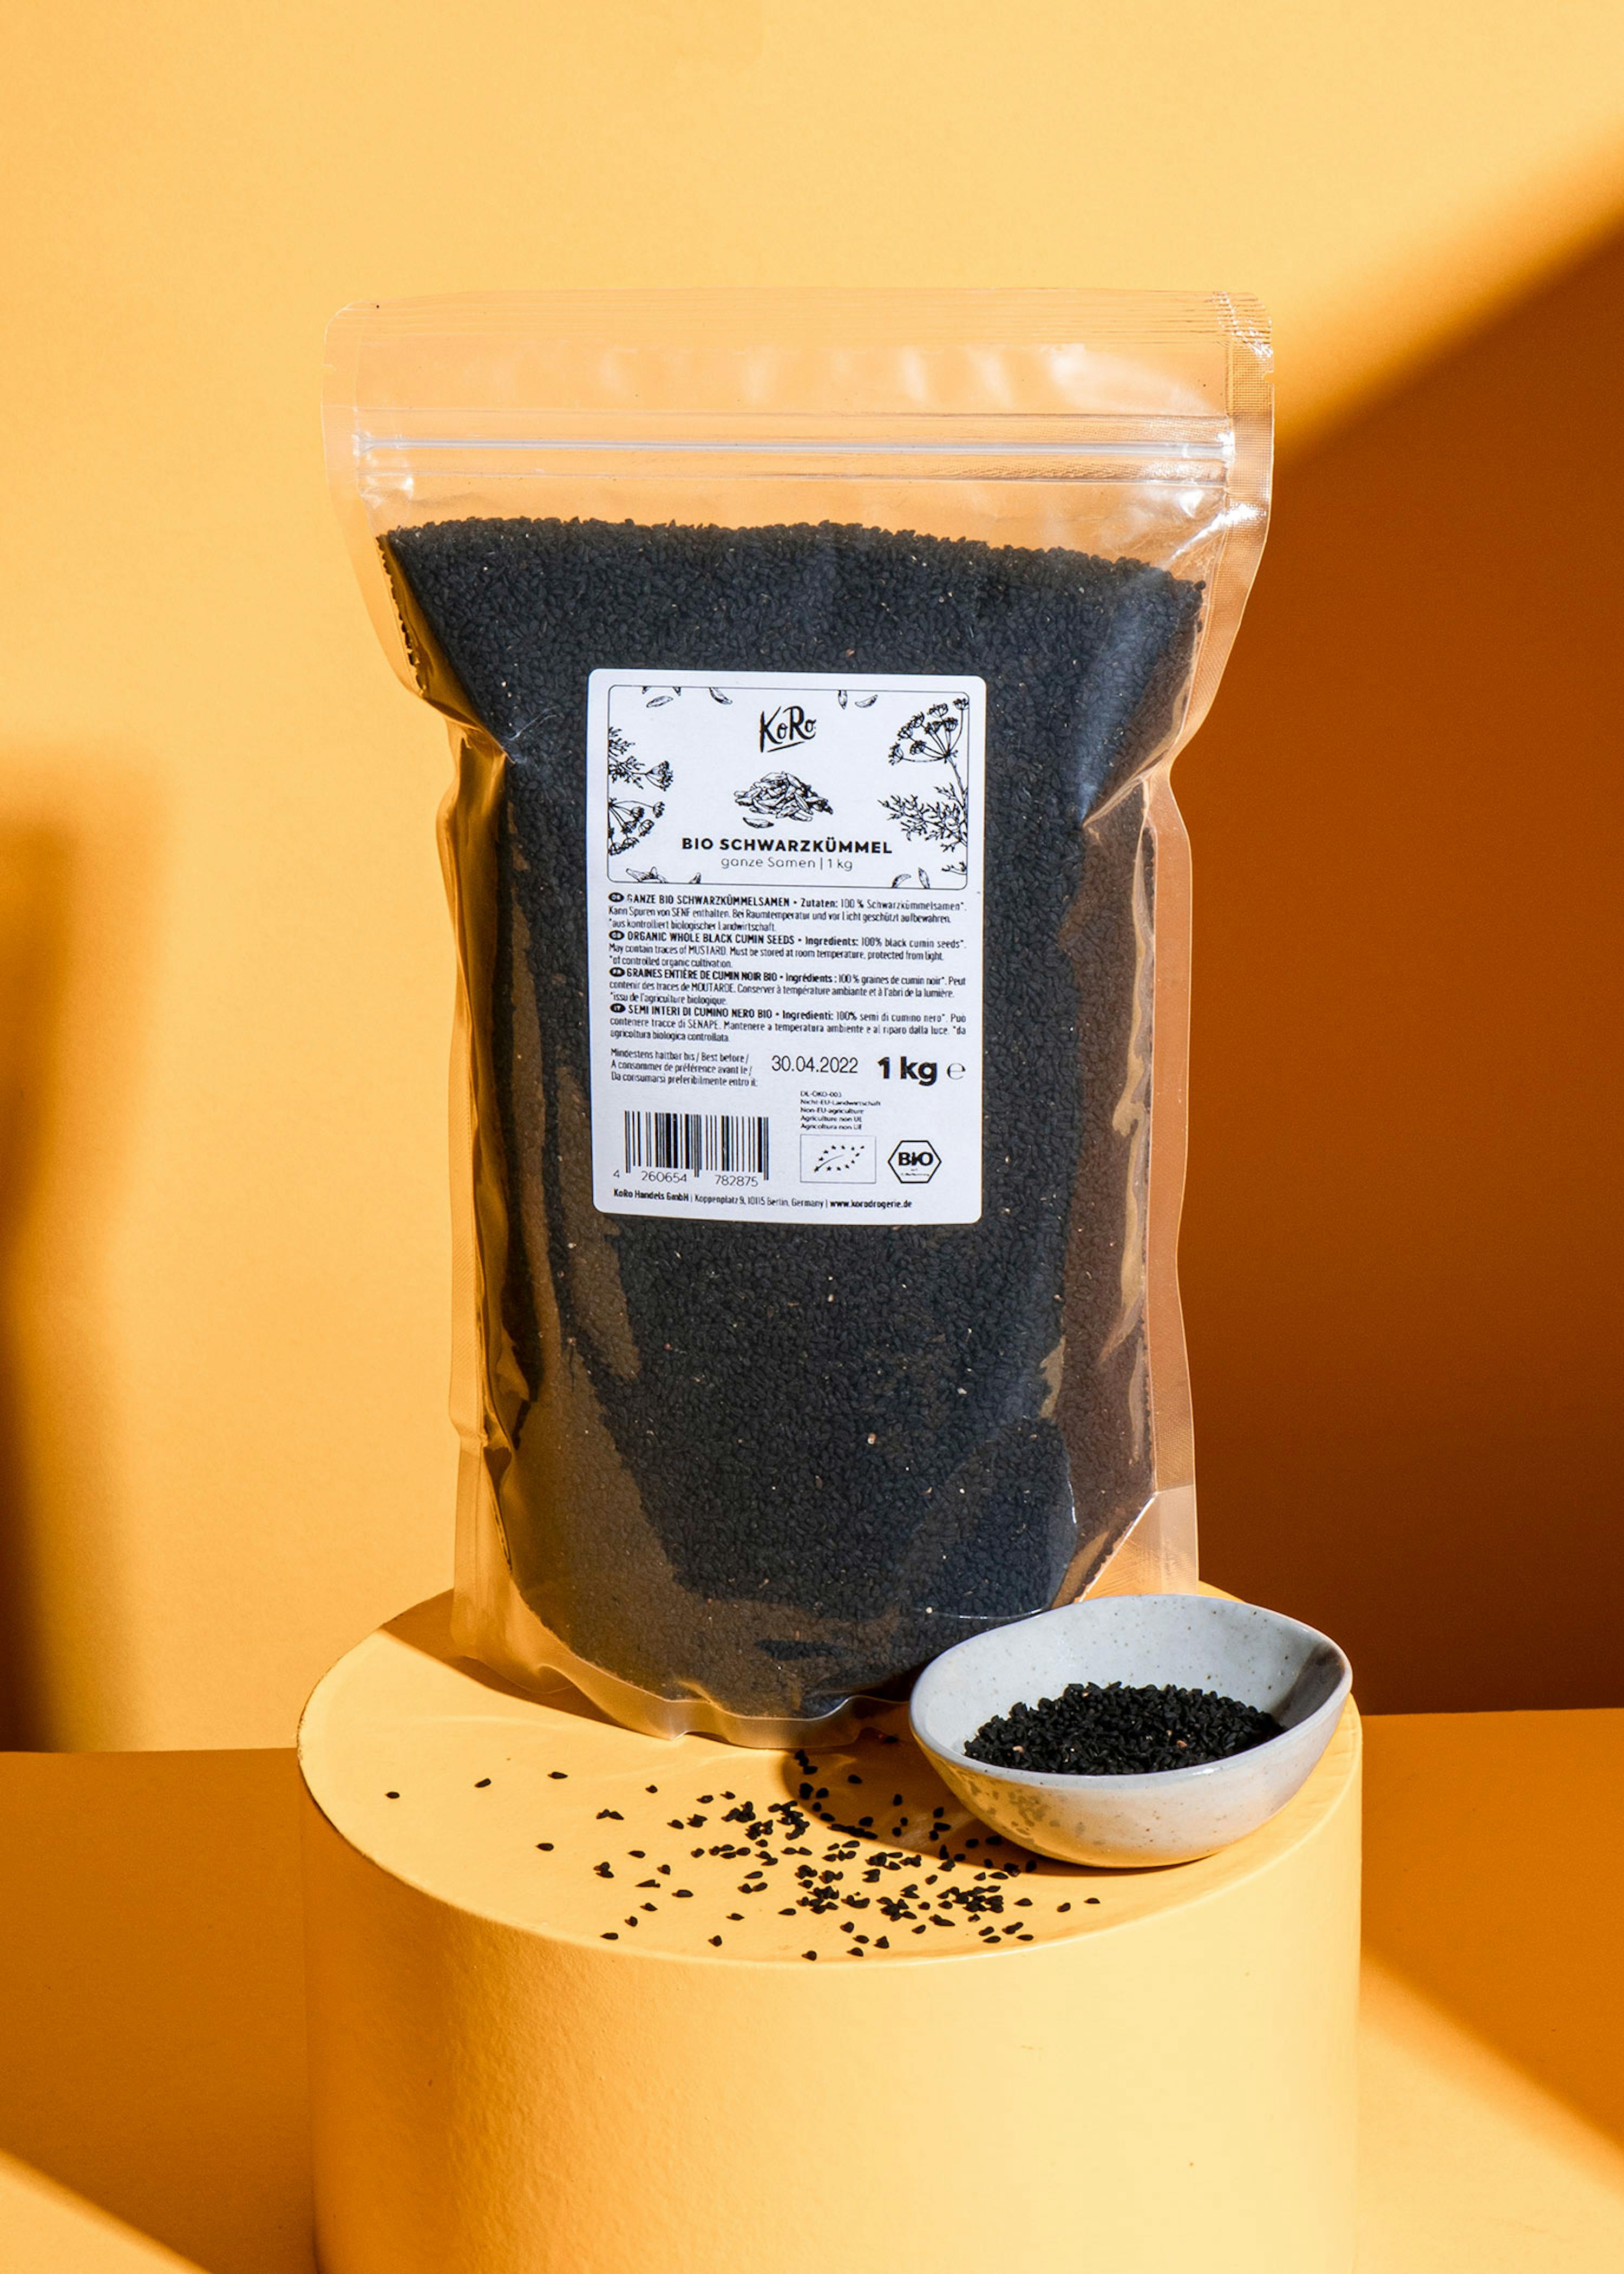 Cumin noir (nigelle) biologique - graines – Les Âmes Fleurs